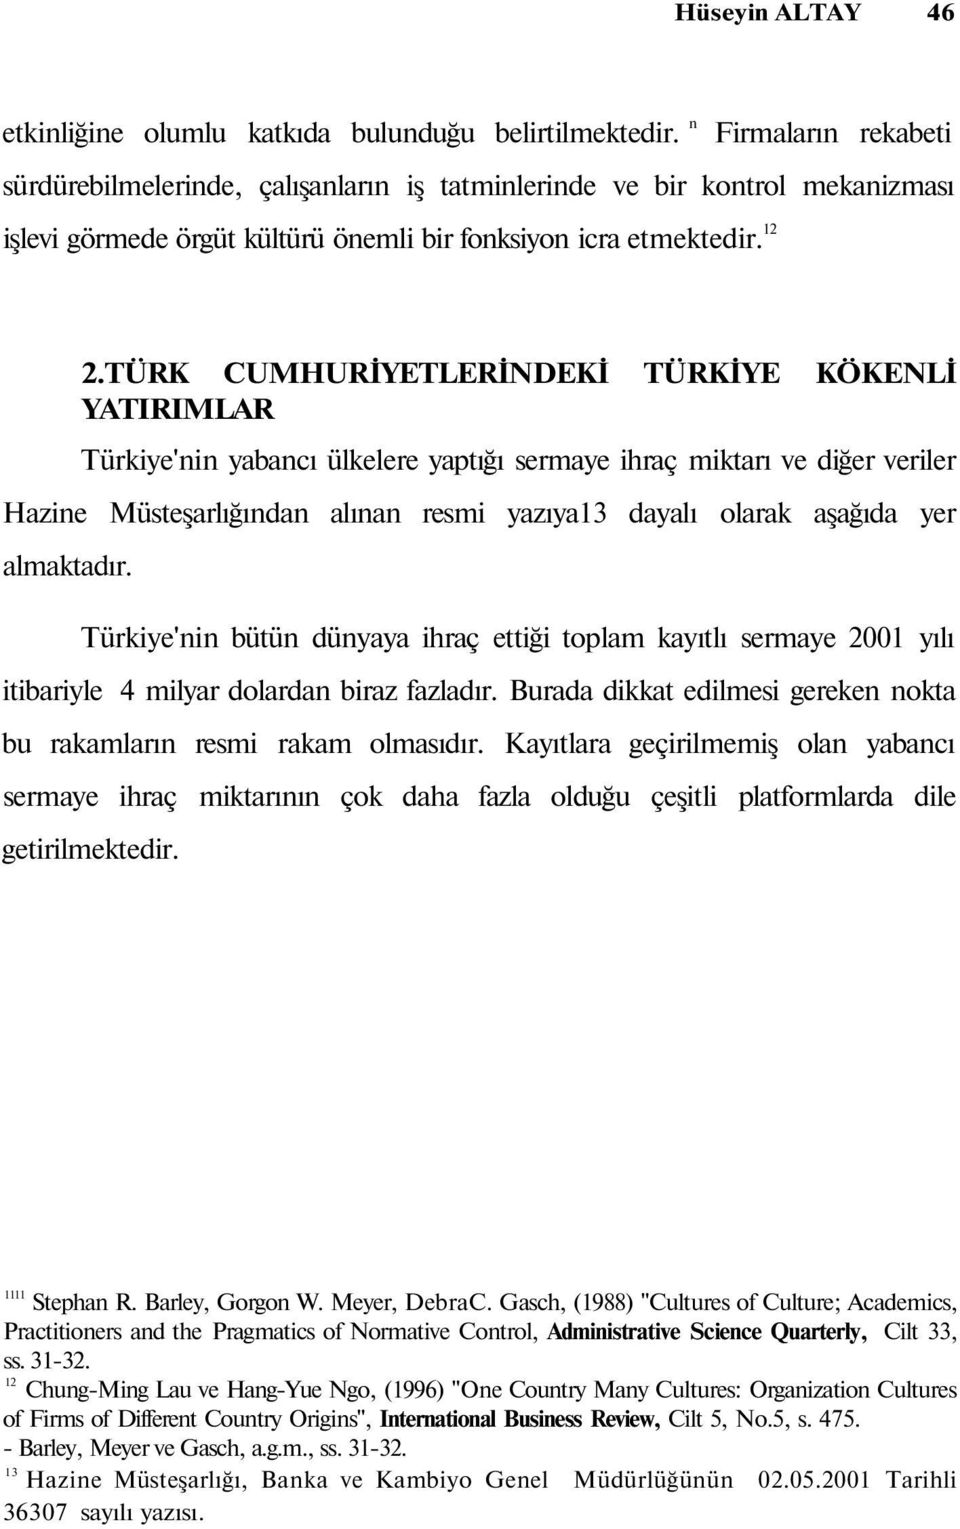 TÜRK CUMHURİYETLERİNDEKİ TÜRKİYE KÖKENLİ YATIRIMLAR Türkiye'nin yabancı ülkelere yaptığı sermaye ihraç miktarı ve diğer veriler Hazine Müsteşarlığından alınan resmi yazıya3 dayalı olarak aşağıda yer